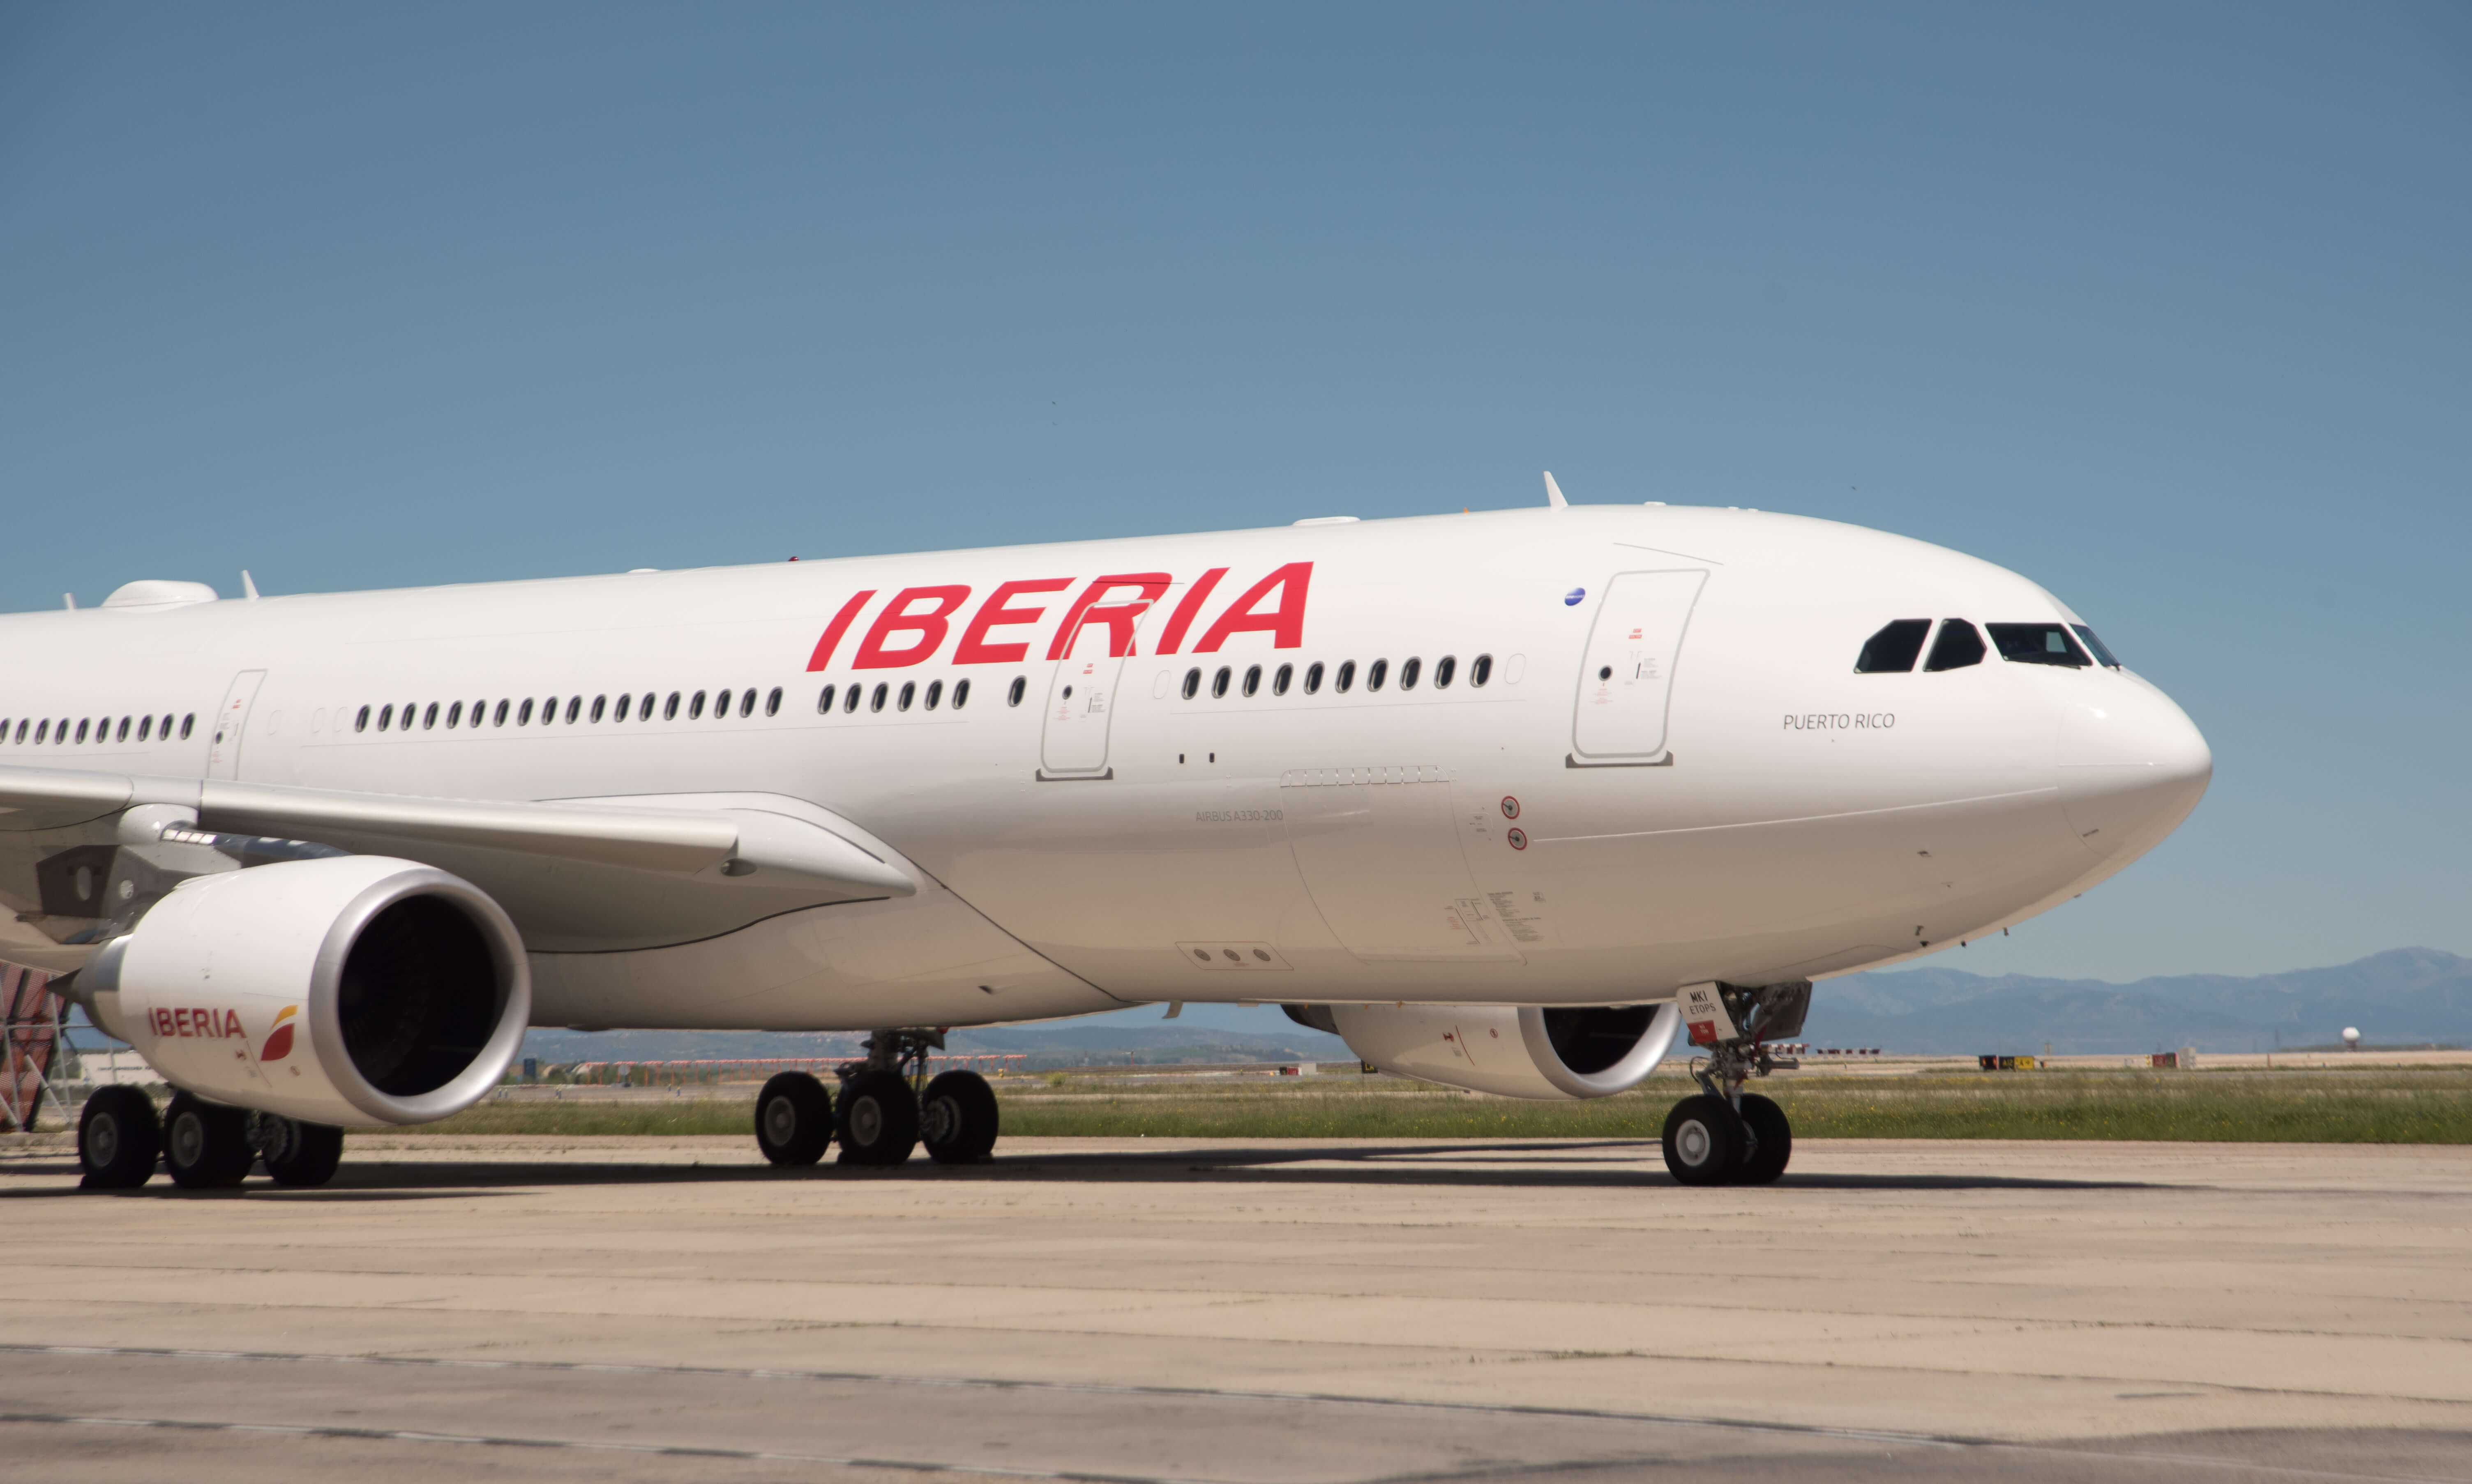 Iberia, la aerolínea más puntual en Europa en 2022, según el informe internacional Cirium - Actualidad